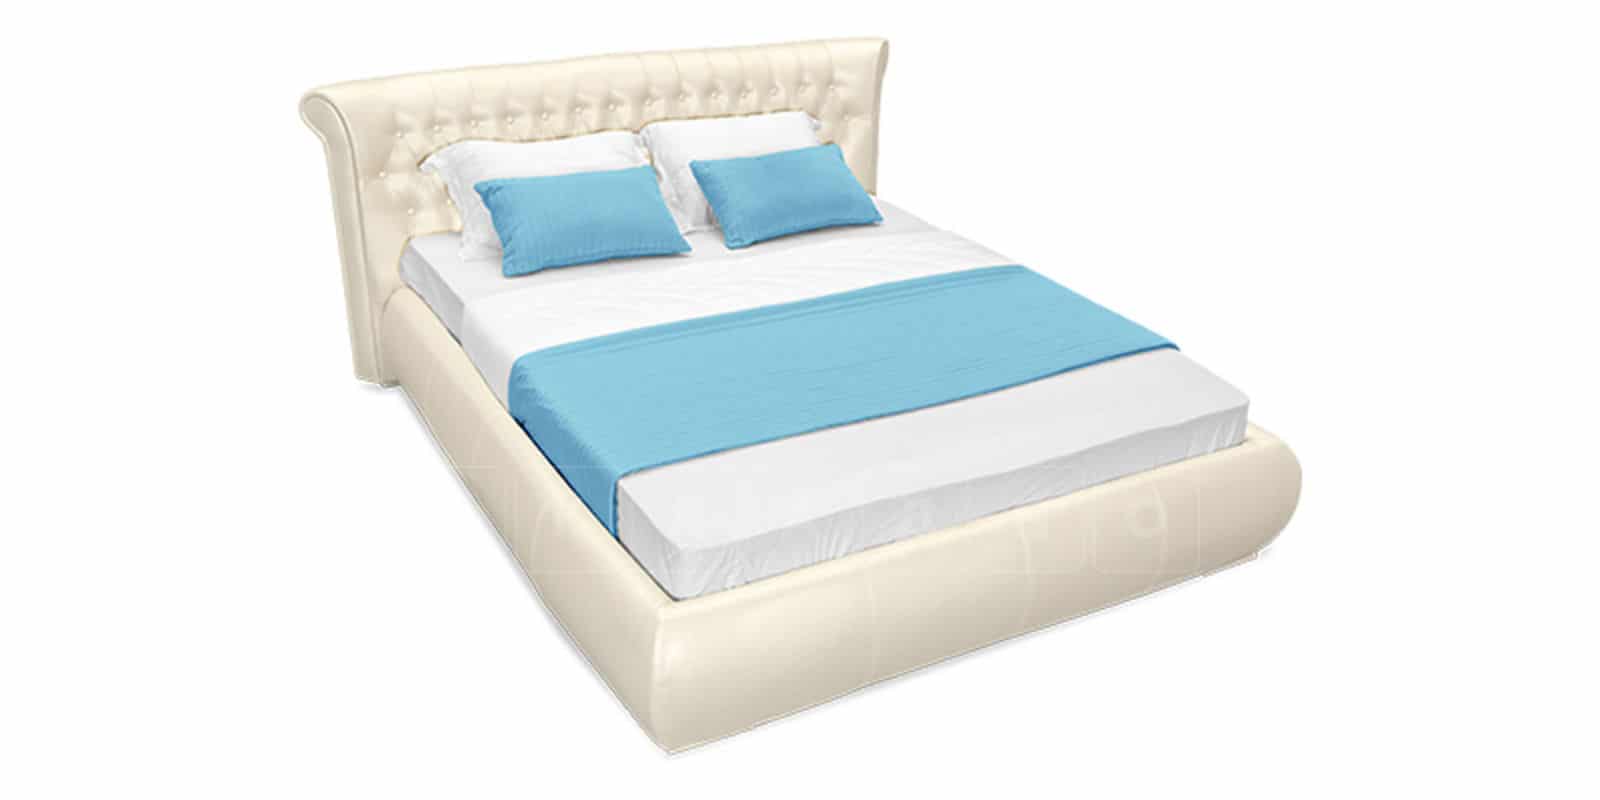 Мягкая кровать Вирджиния 160 см экокожа перламутрового цвета фото 5 | интернет-магазин Складно